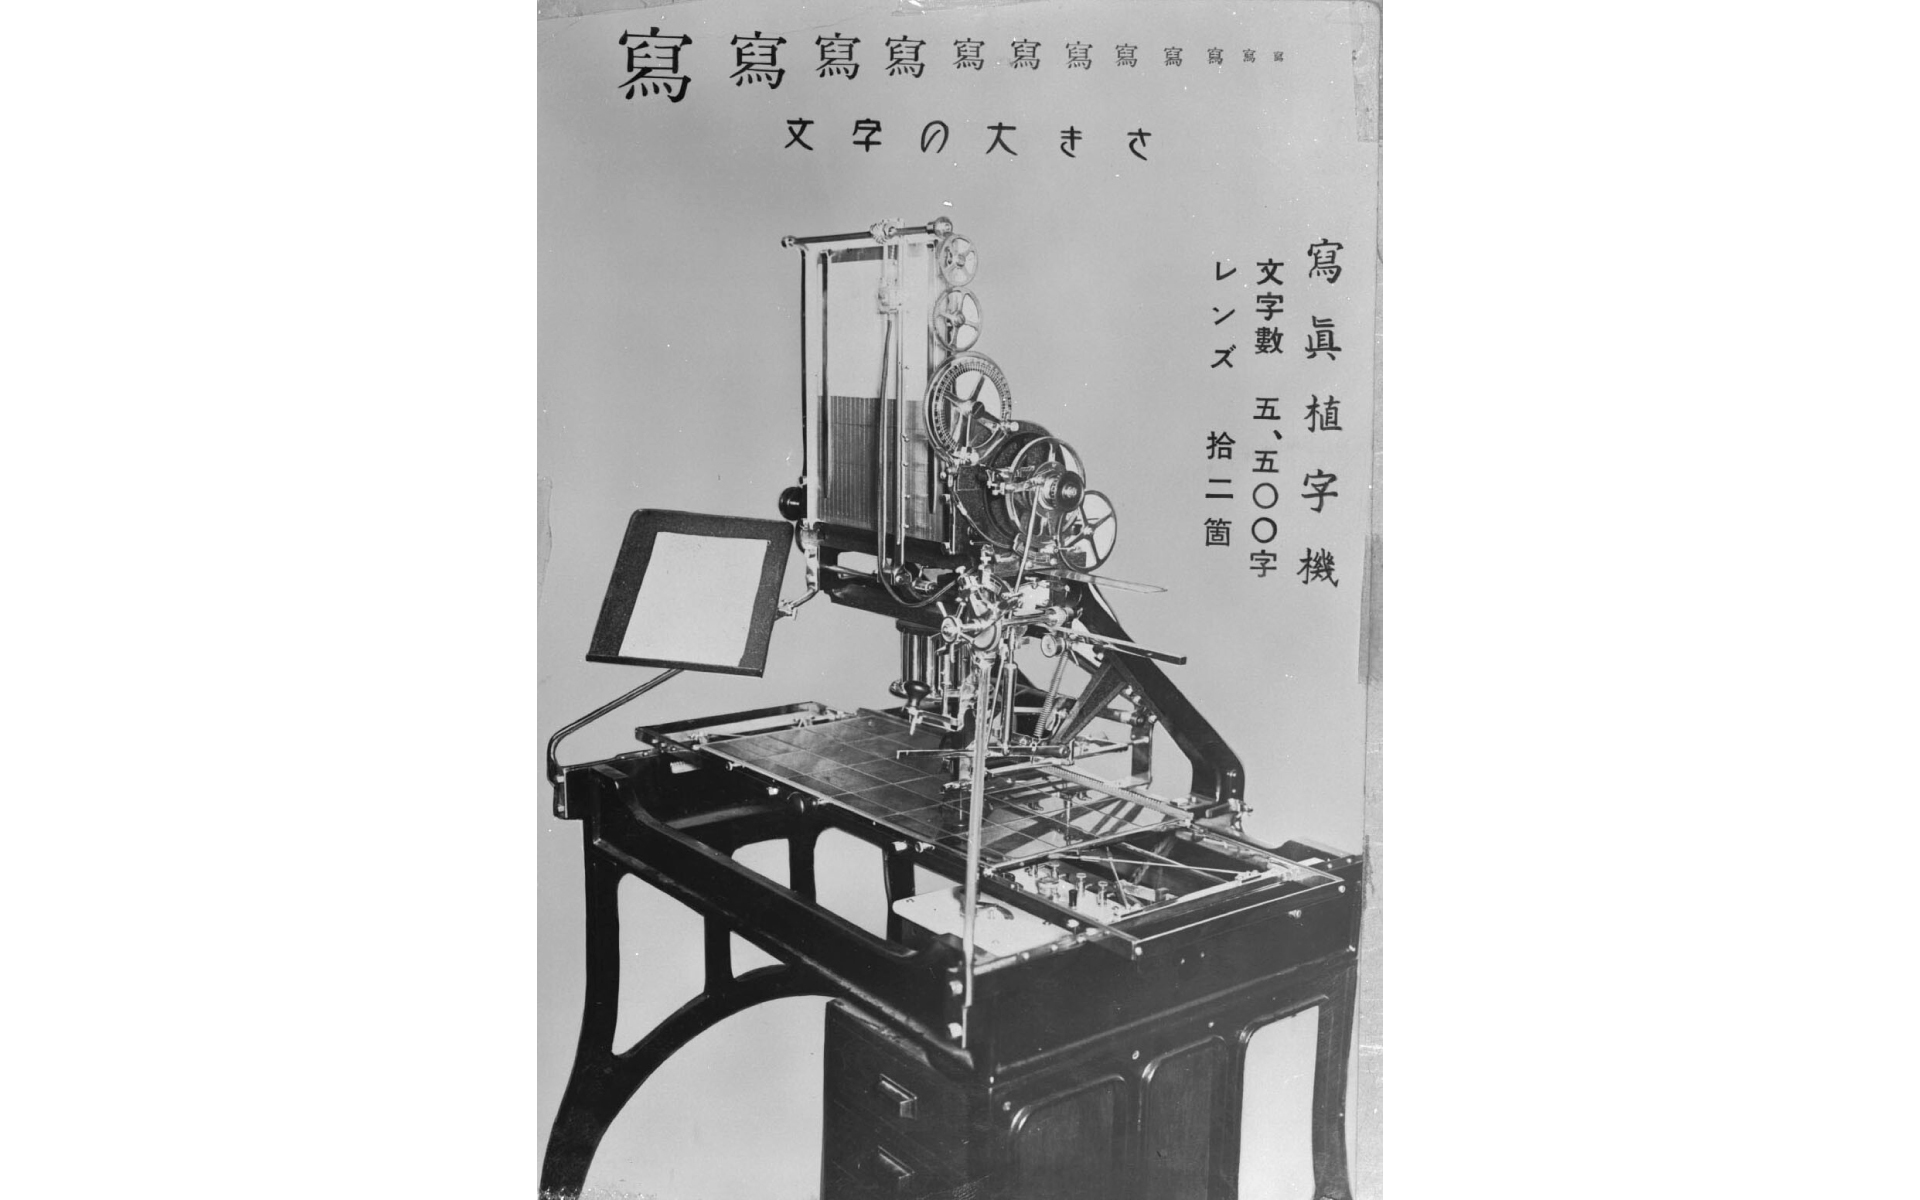 モリサワ 邦文写真植字機発明100周年まであと1年！ 「写植機」再現など